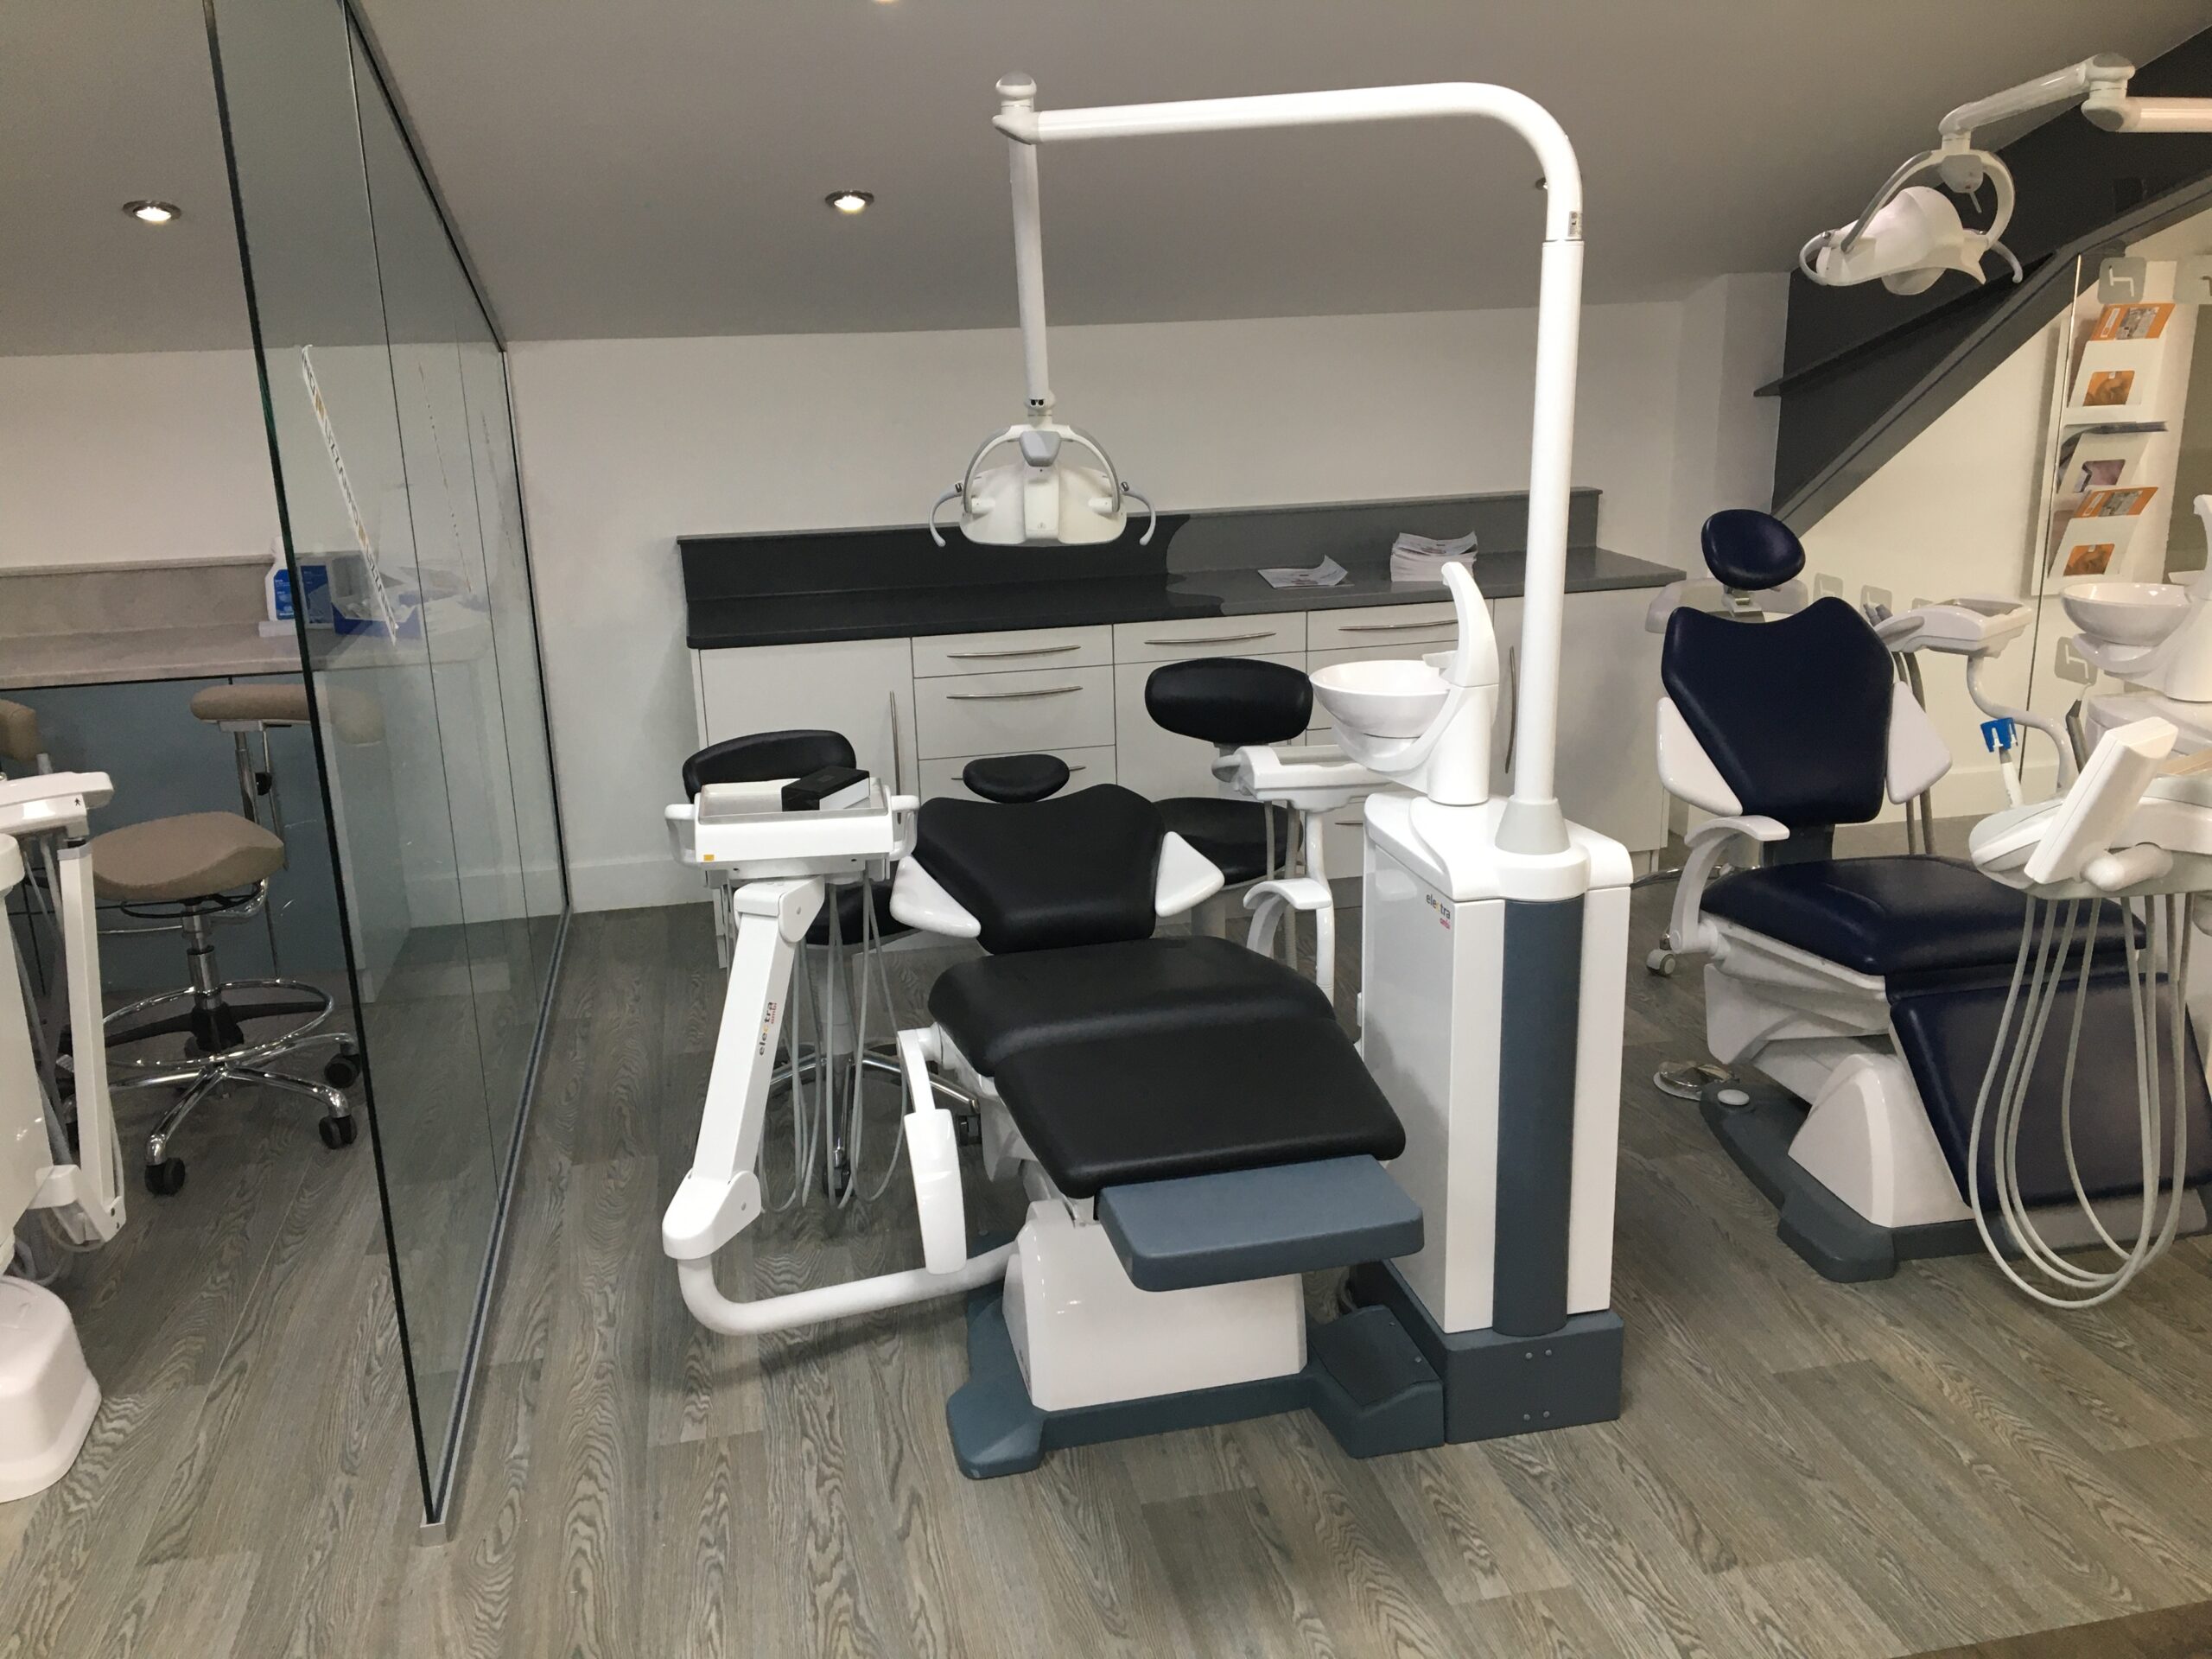 Fedesa dental chairs in the Hague Dental Supplies Showroom